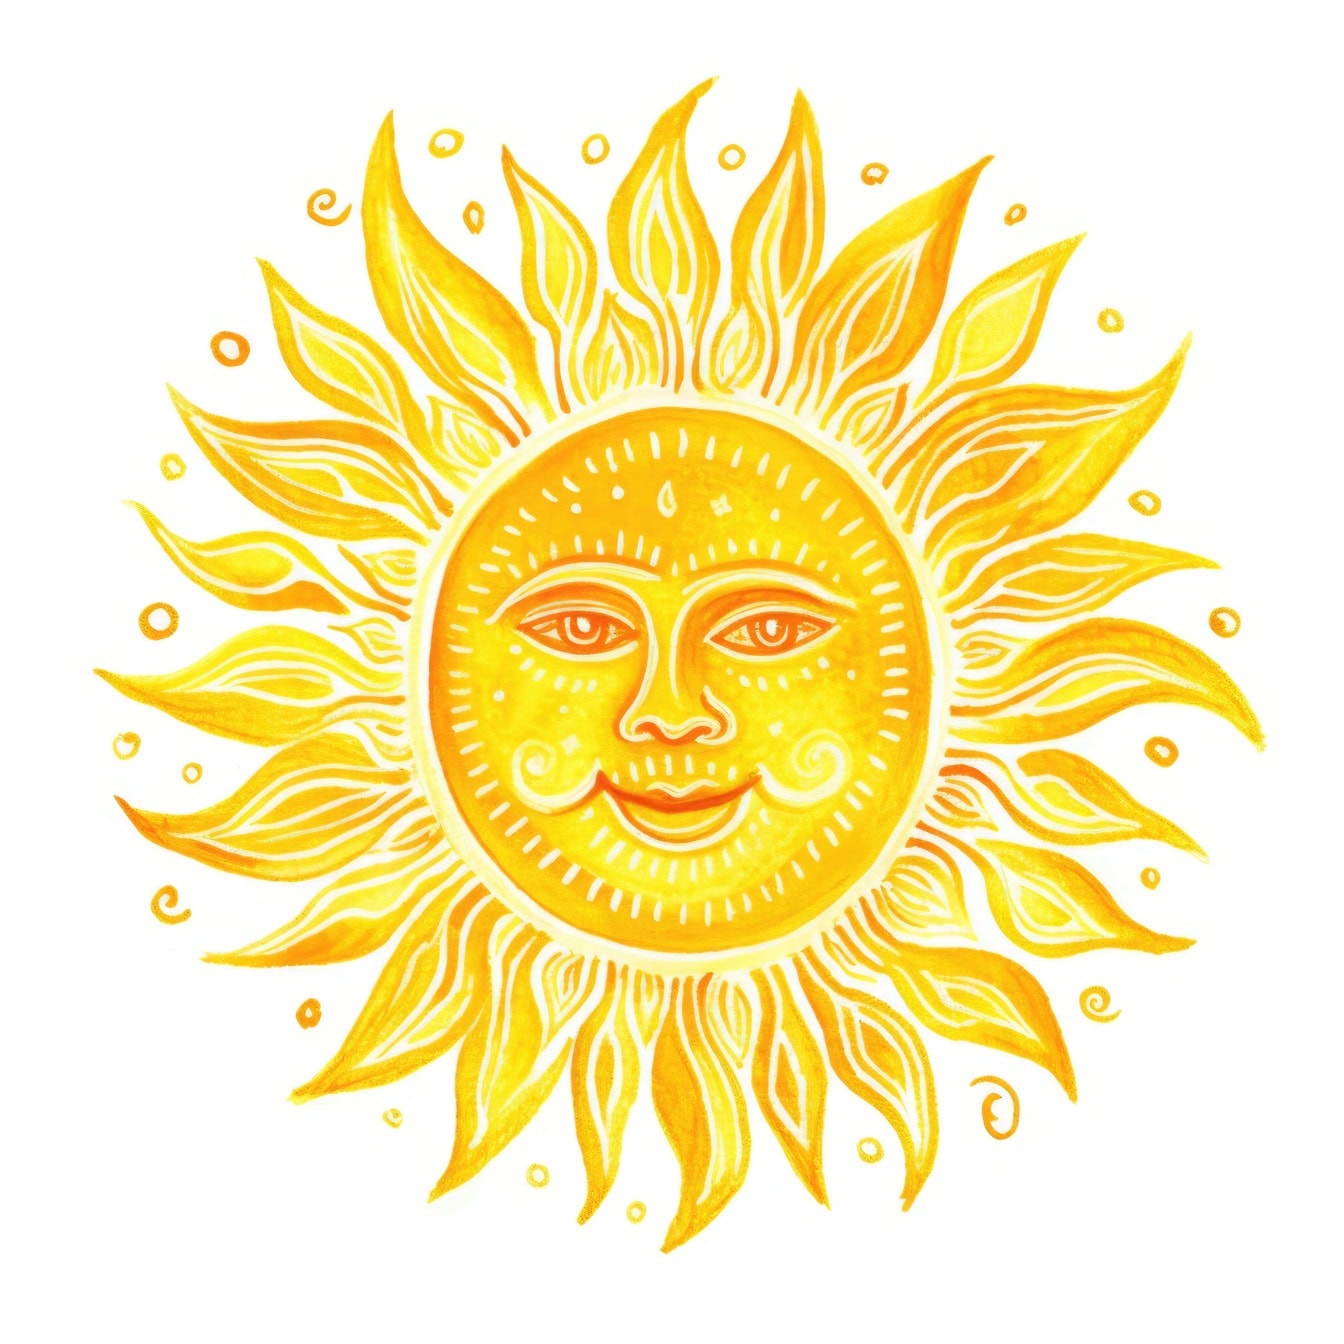 Grafiikka keltaisesta auringosta, johon on piirretty hymyilevät kasvot valkoiselle pohjalle